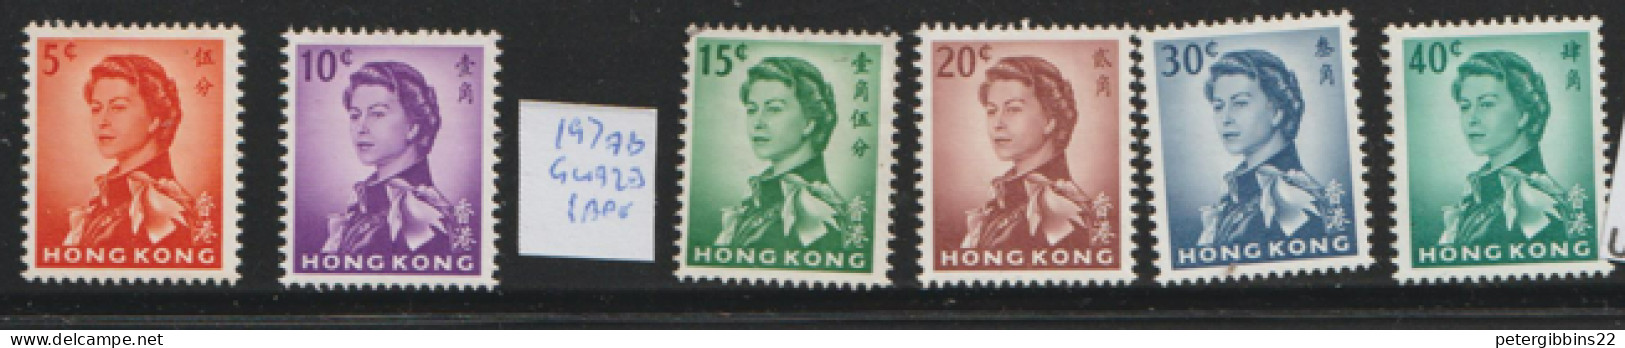 Hong Kong 1962 Definitives  Various Valus  Wmk  Upright  Mounted Mint - Ongebruikt